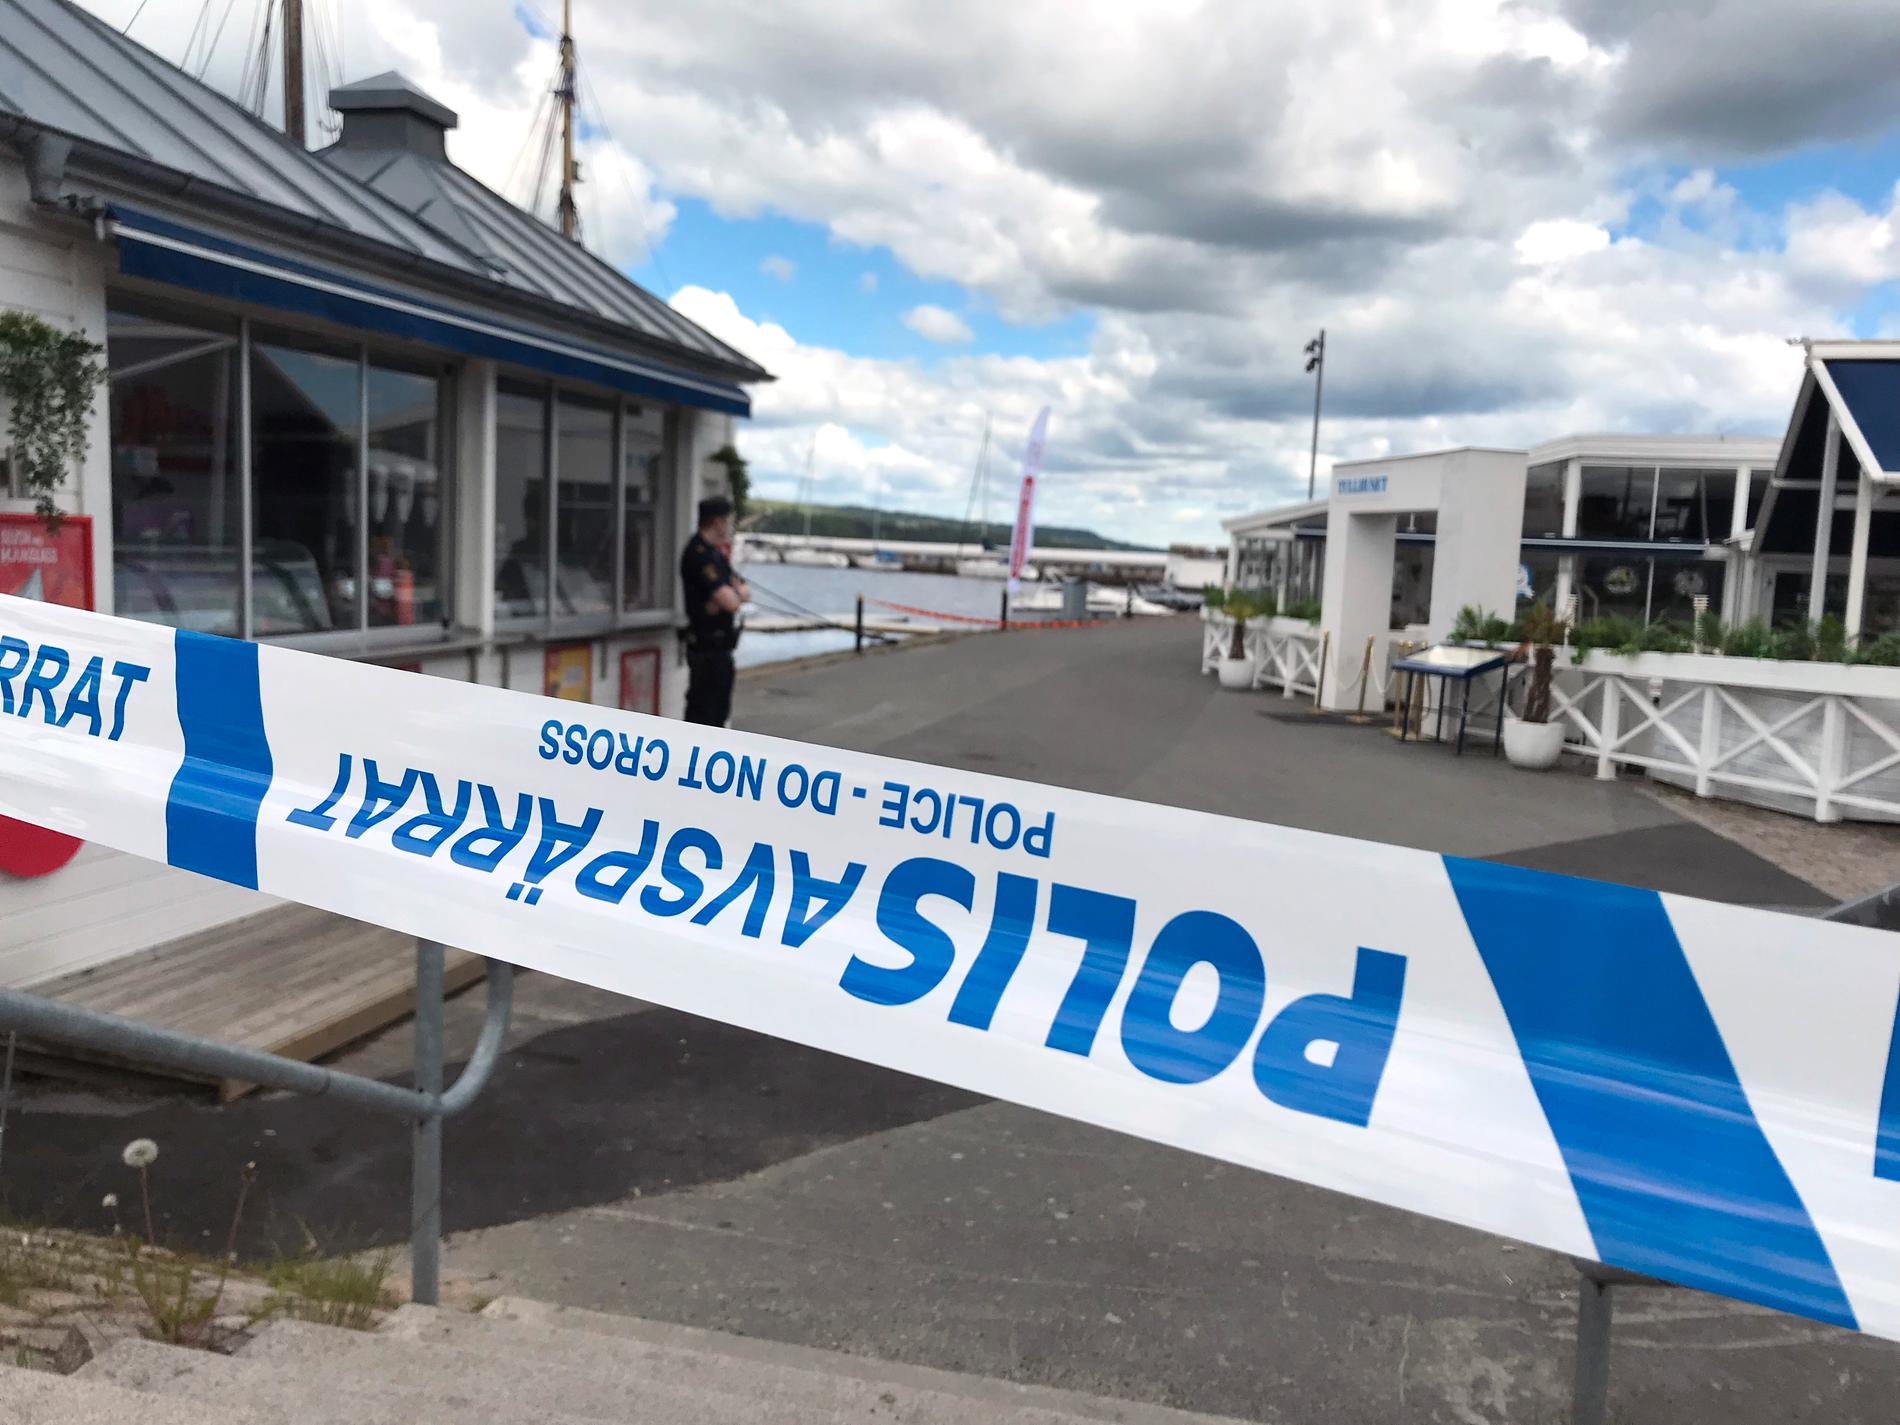 Polisen larmades vid 10.27 på lördagen om en befarad drunkning vid hamnpiren i Jönköping.